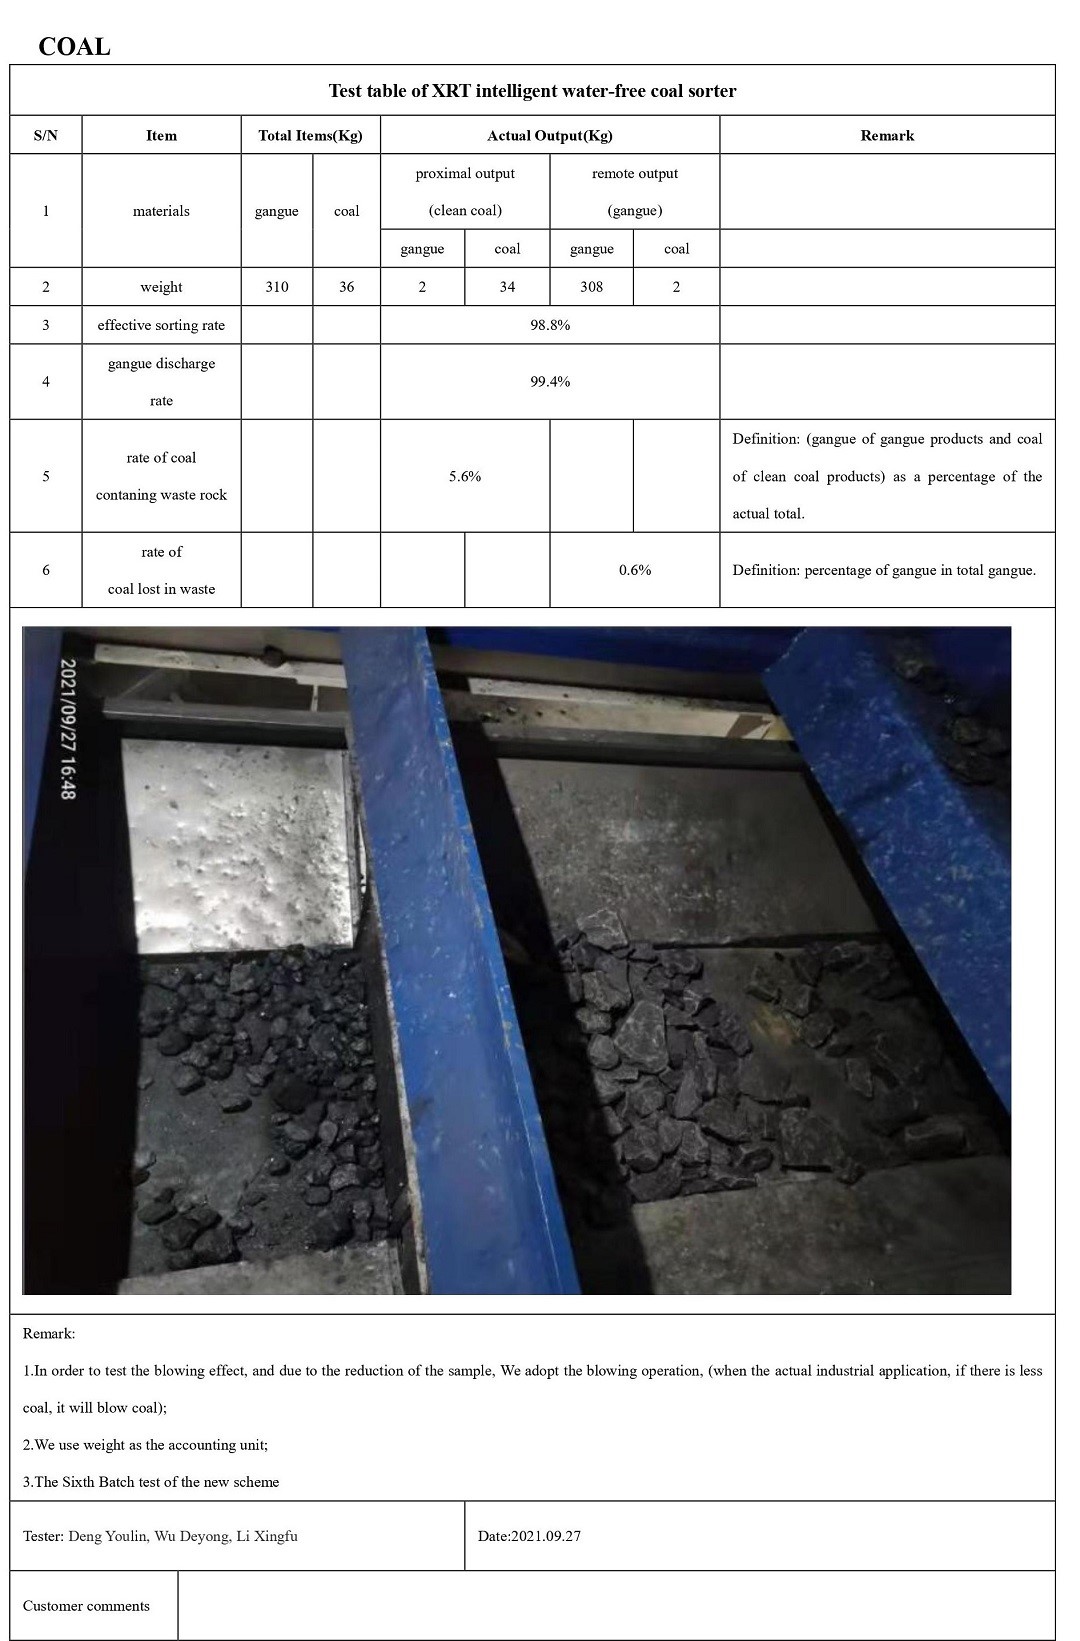 coal-sample-test-xrt-sorter-HOT.jpg